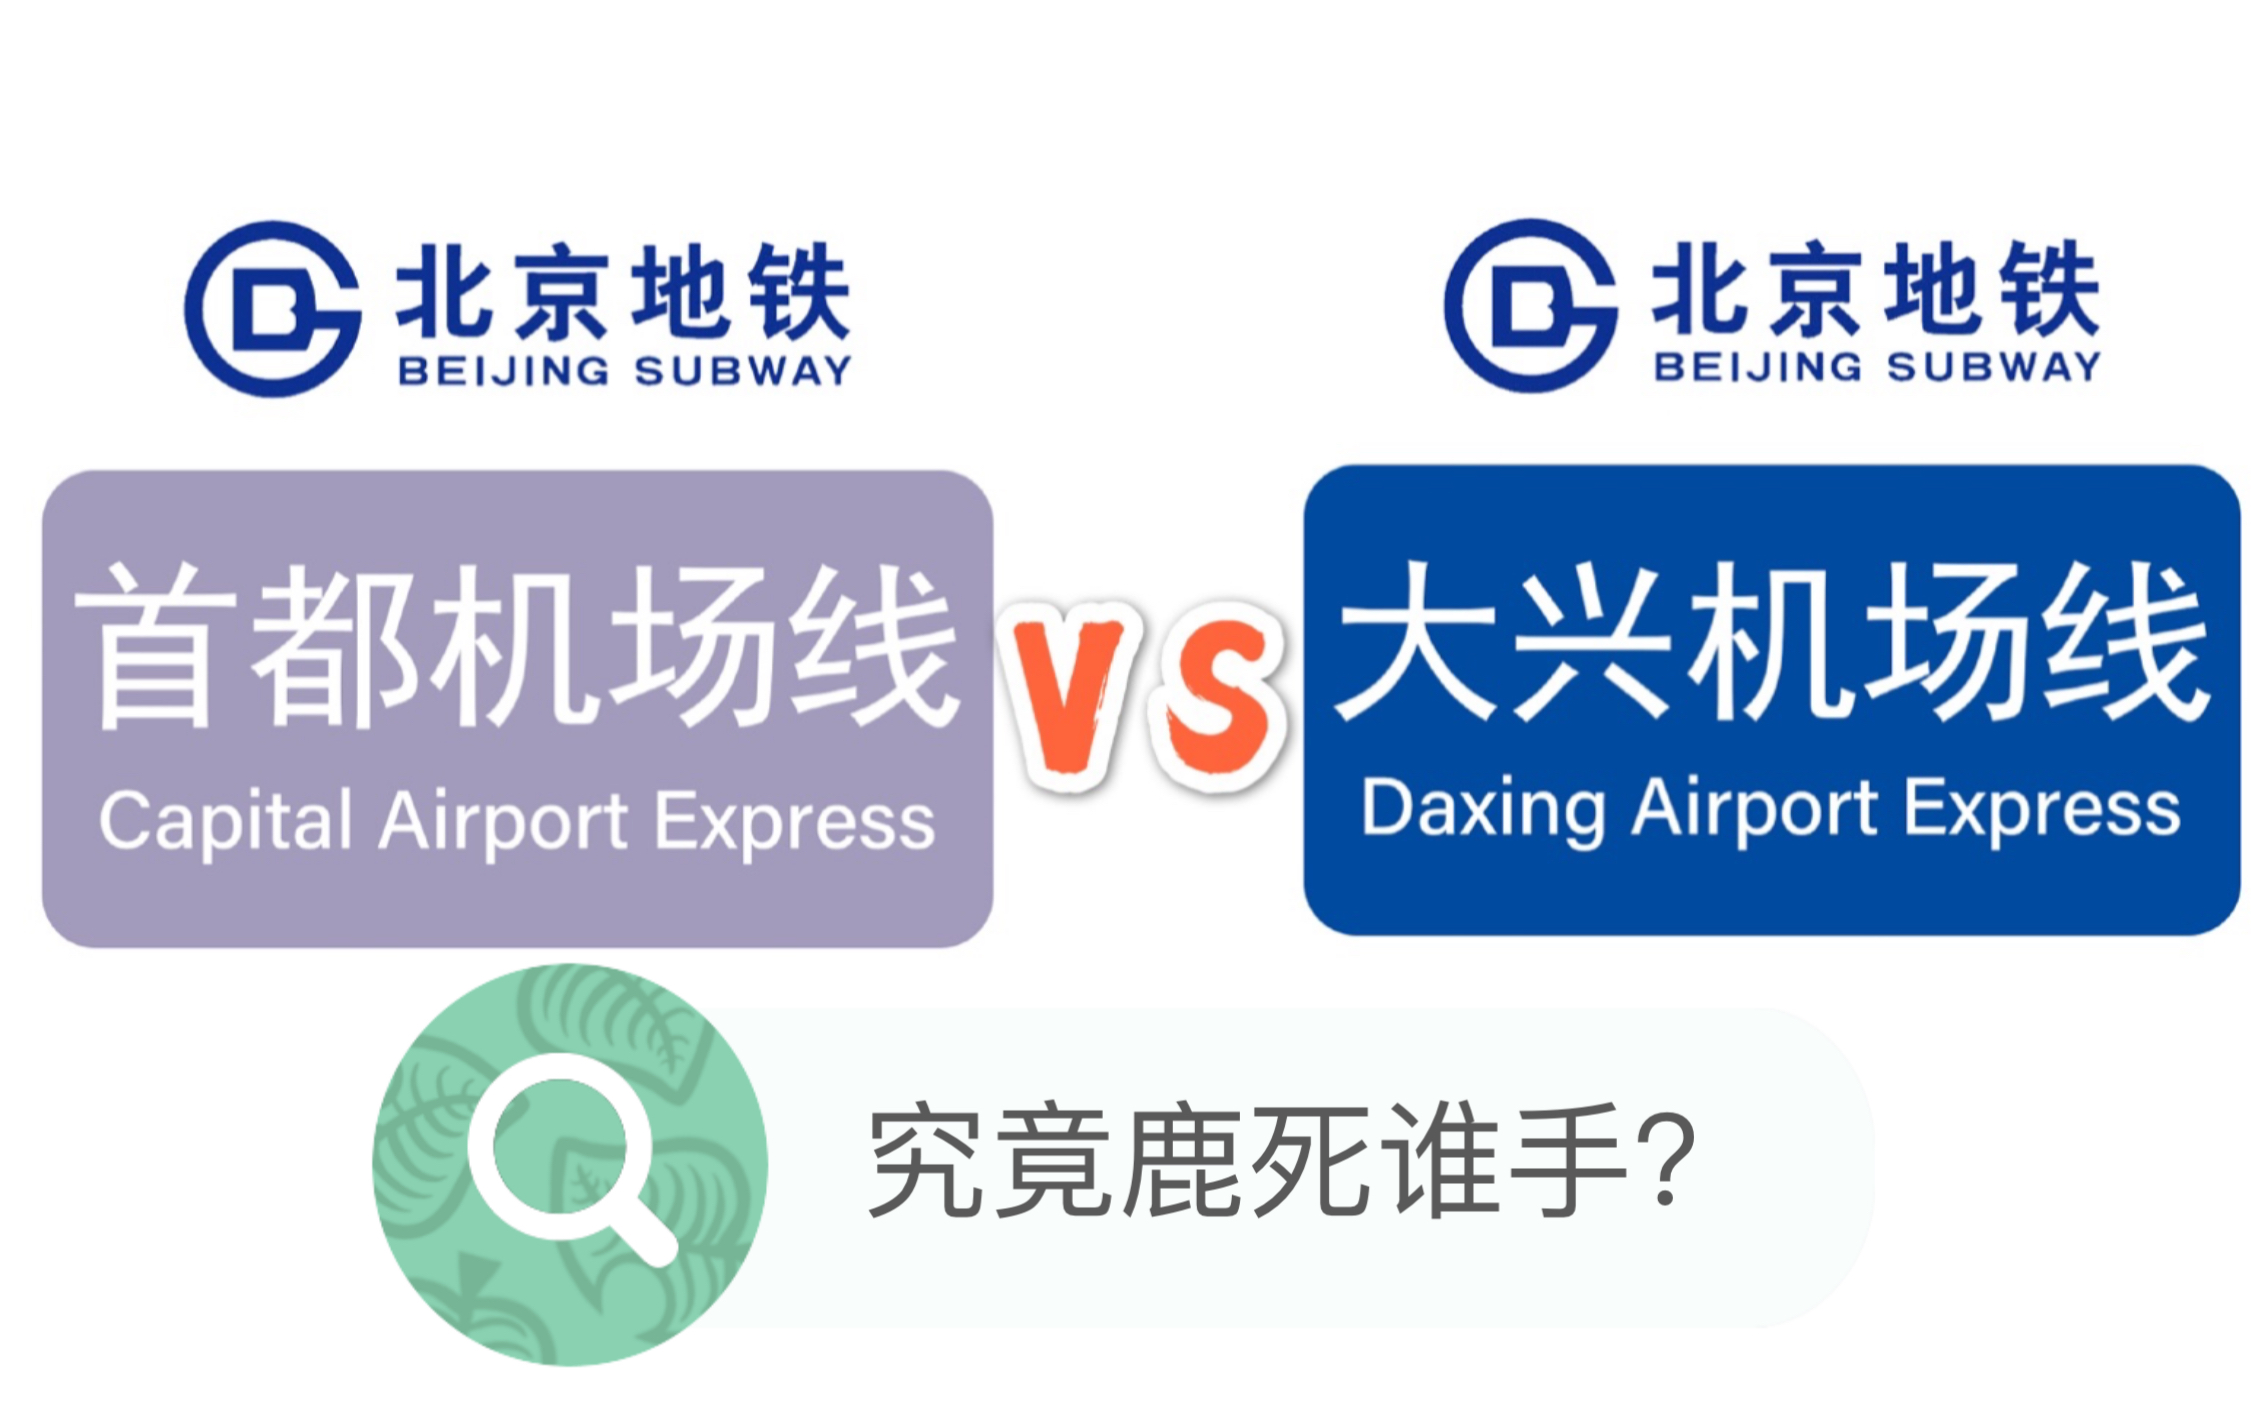 北京地铁首都机场线和大兴机场线用站间距决一死战的一天!